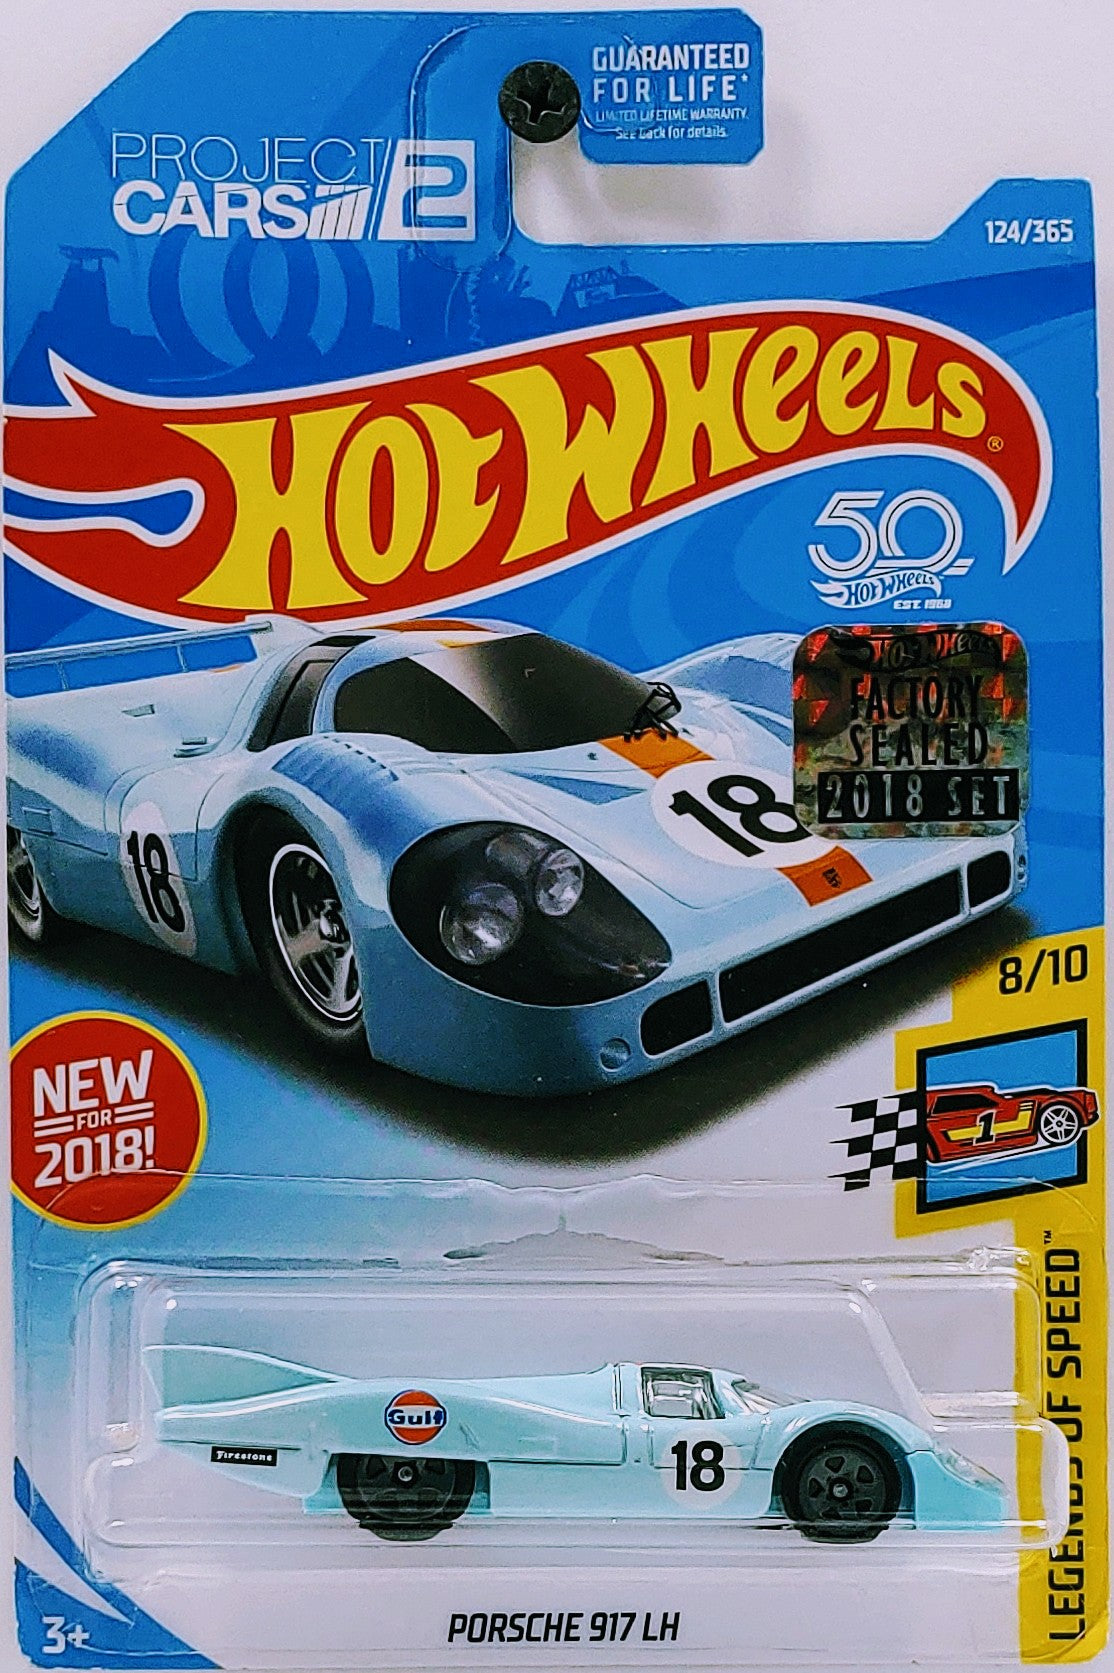 Hot Wheels 2018 - Collector # 124/365 - Legends of Speed 8/10 - Porsche 917 LH - Powder Blue / Gulf Racing - FSC